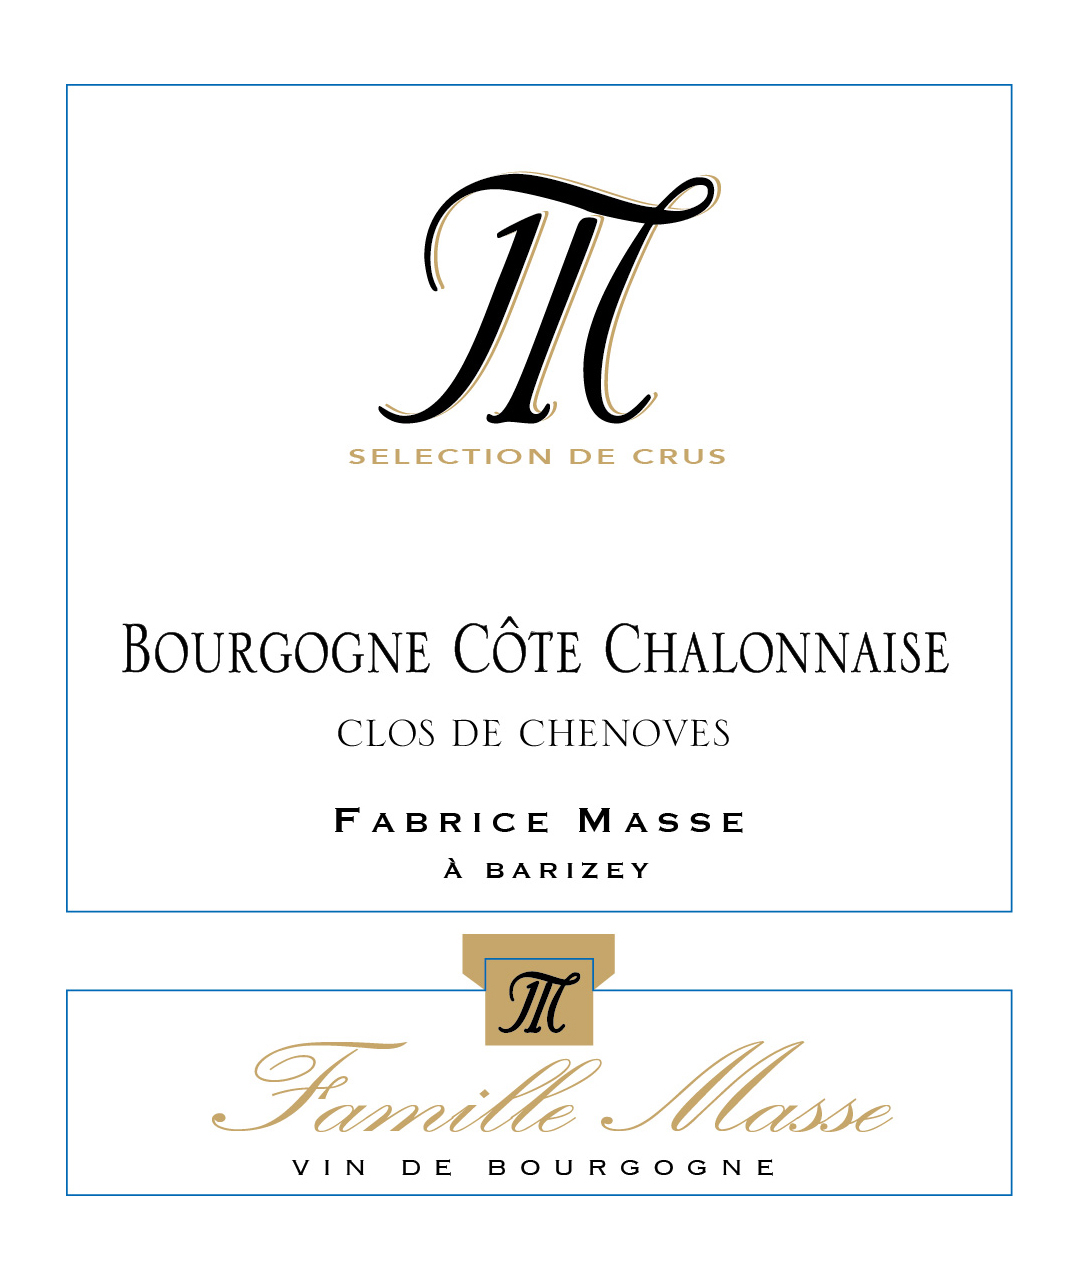 Bourgogne Côte Chalonnaise "Clos de chenôves" Rouge